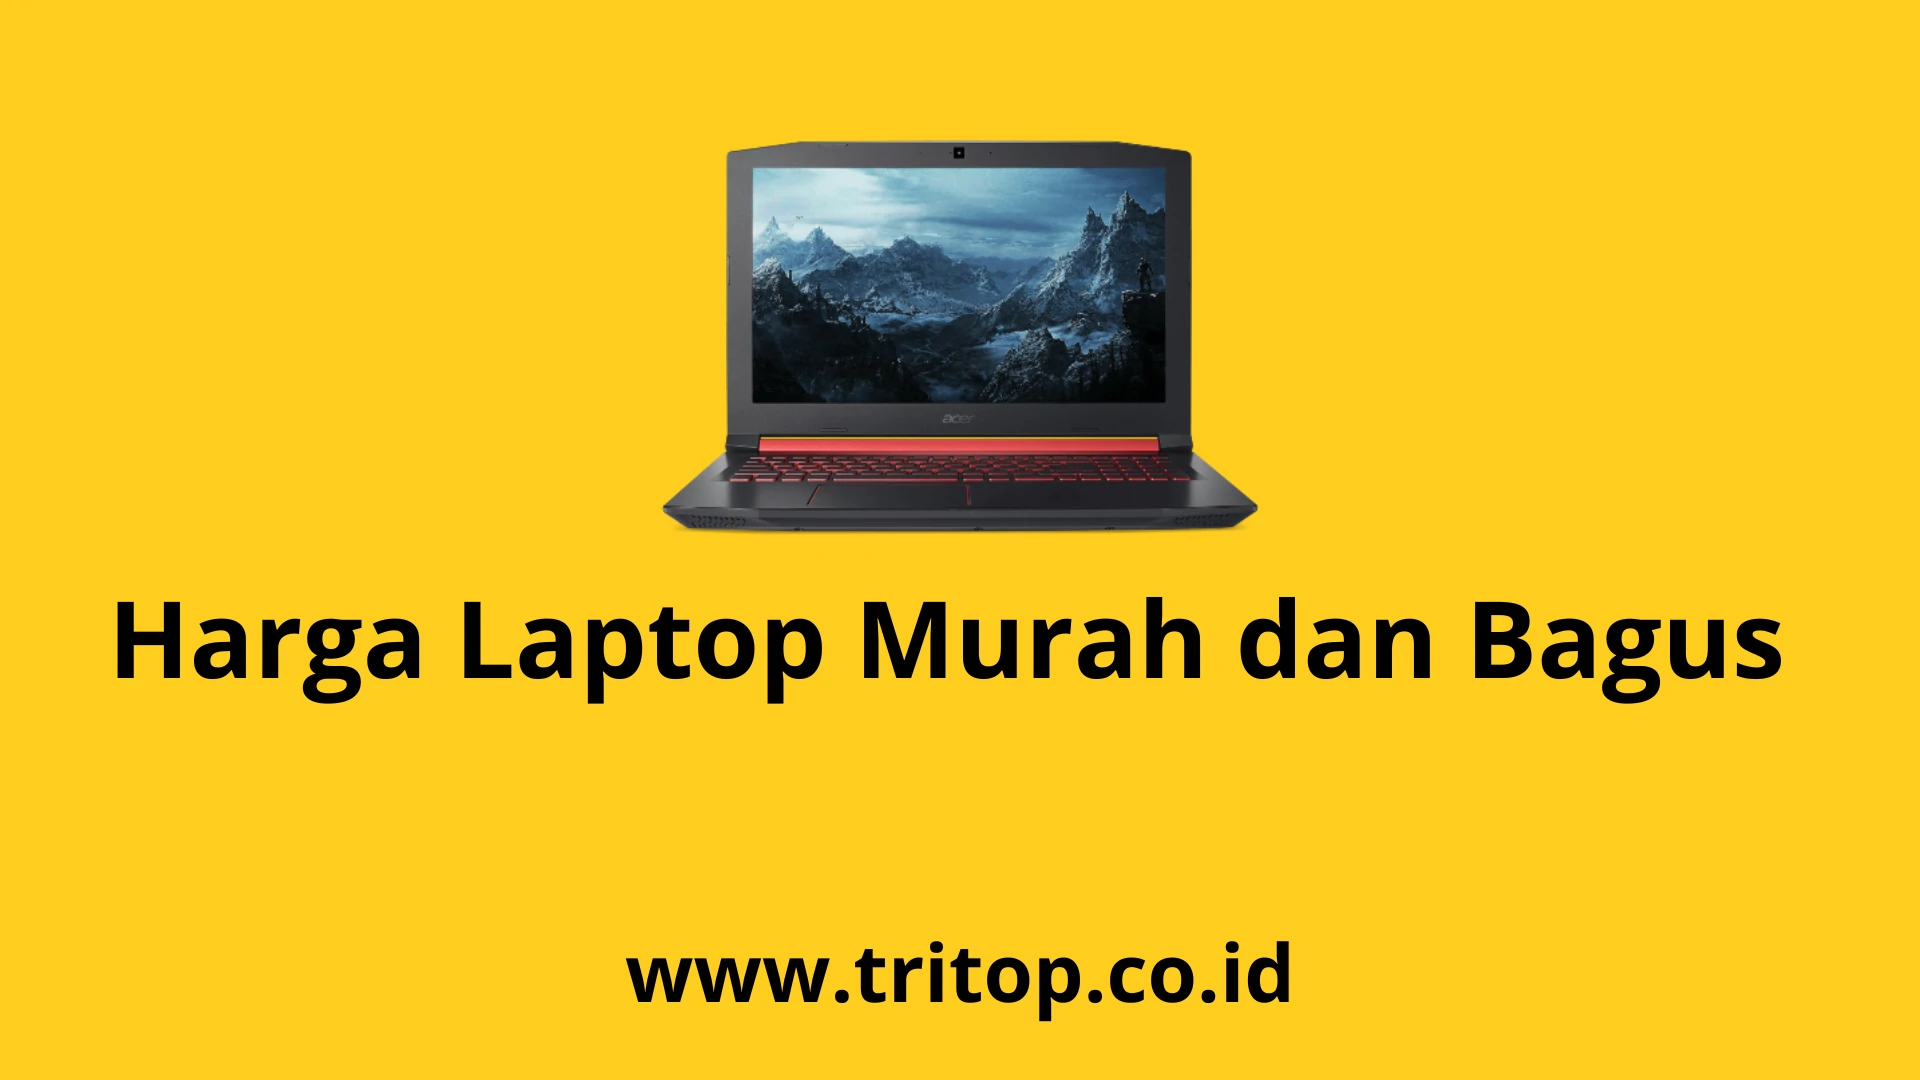 Harga Laptop Murah dan Bagus Tritop.co.id